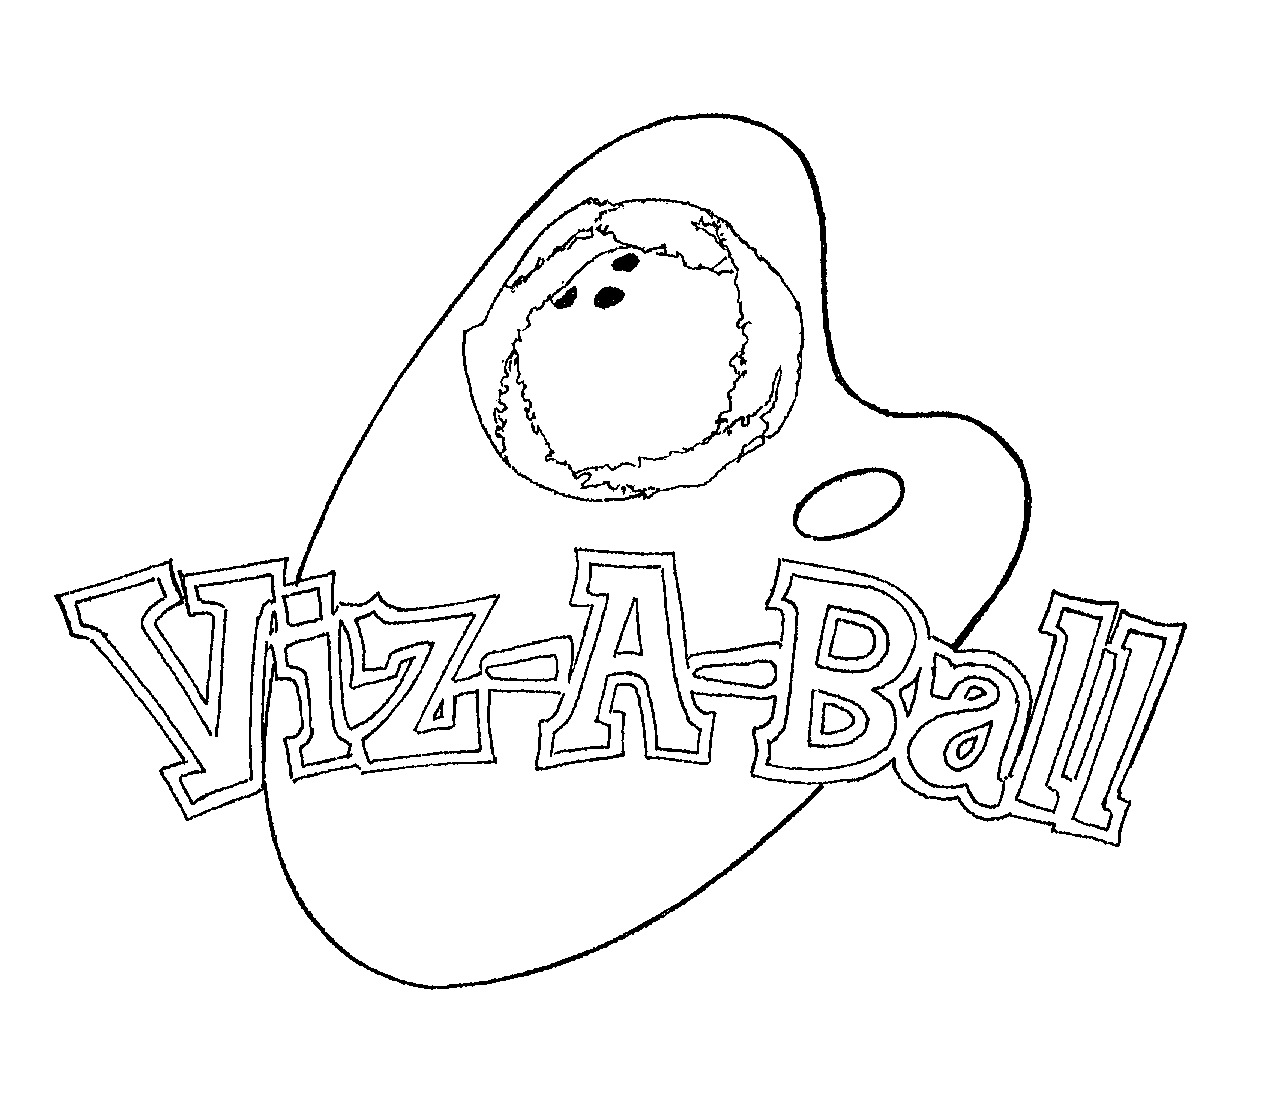  VIZ-A-BALL